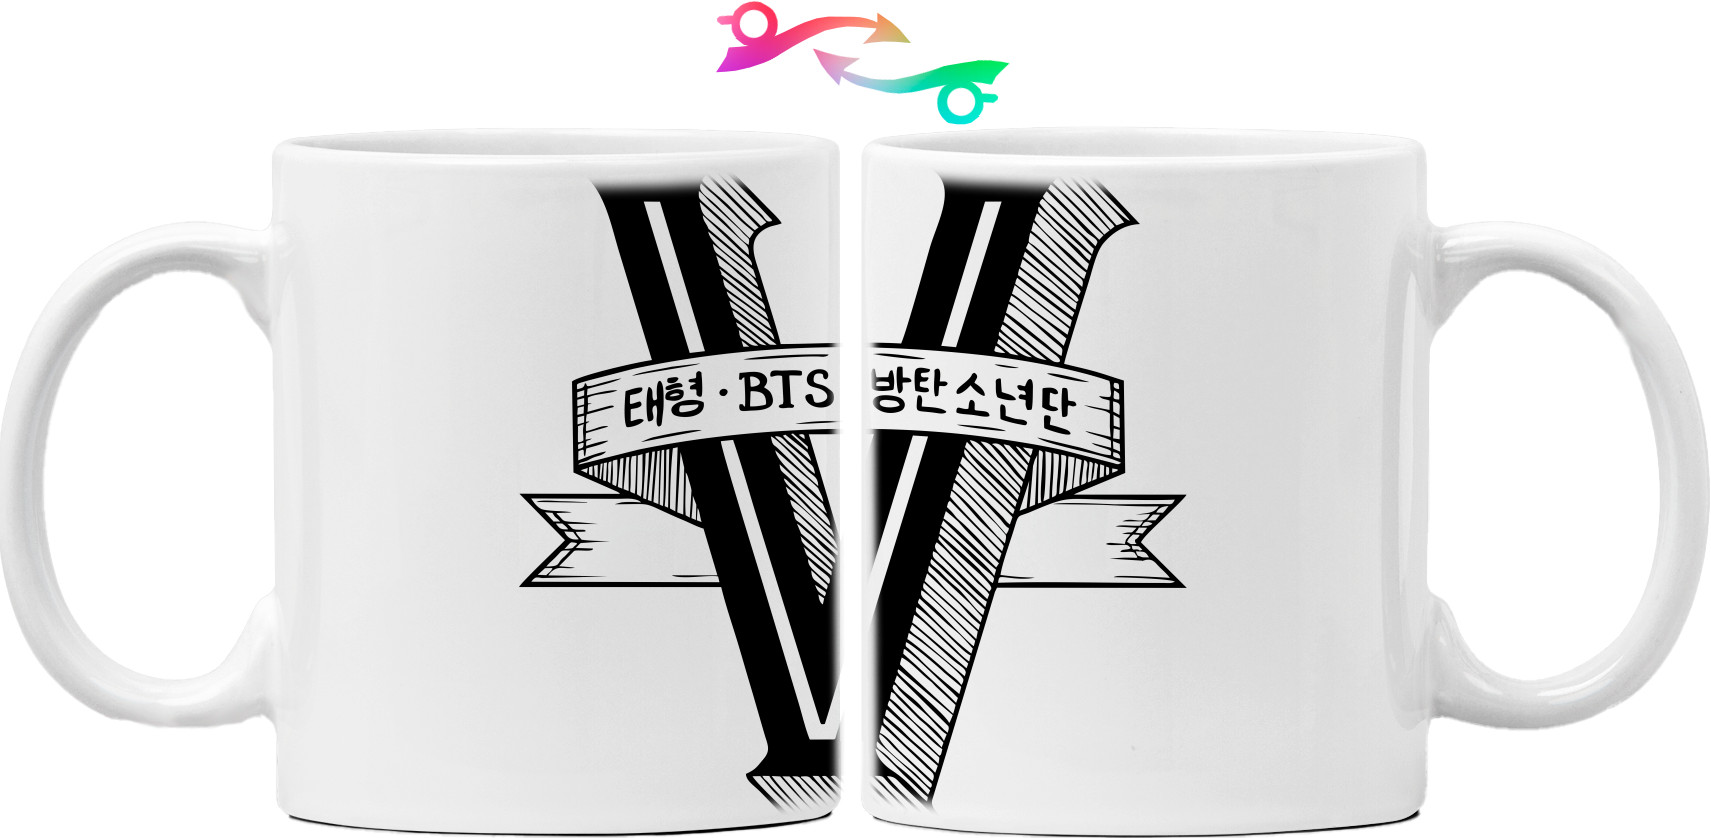 v bts logo